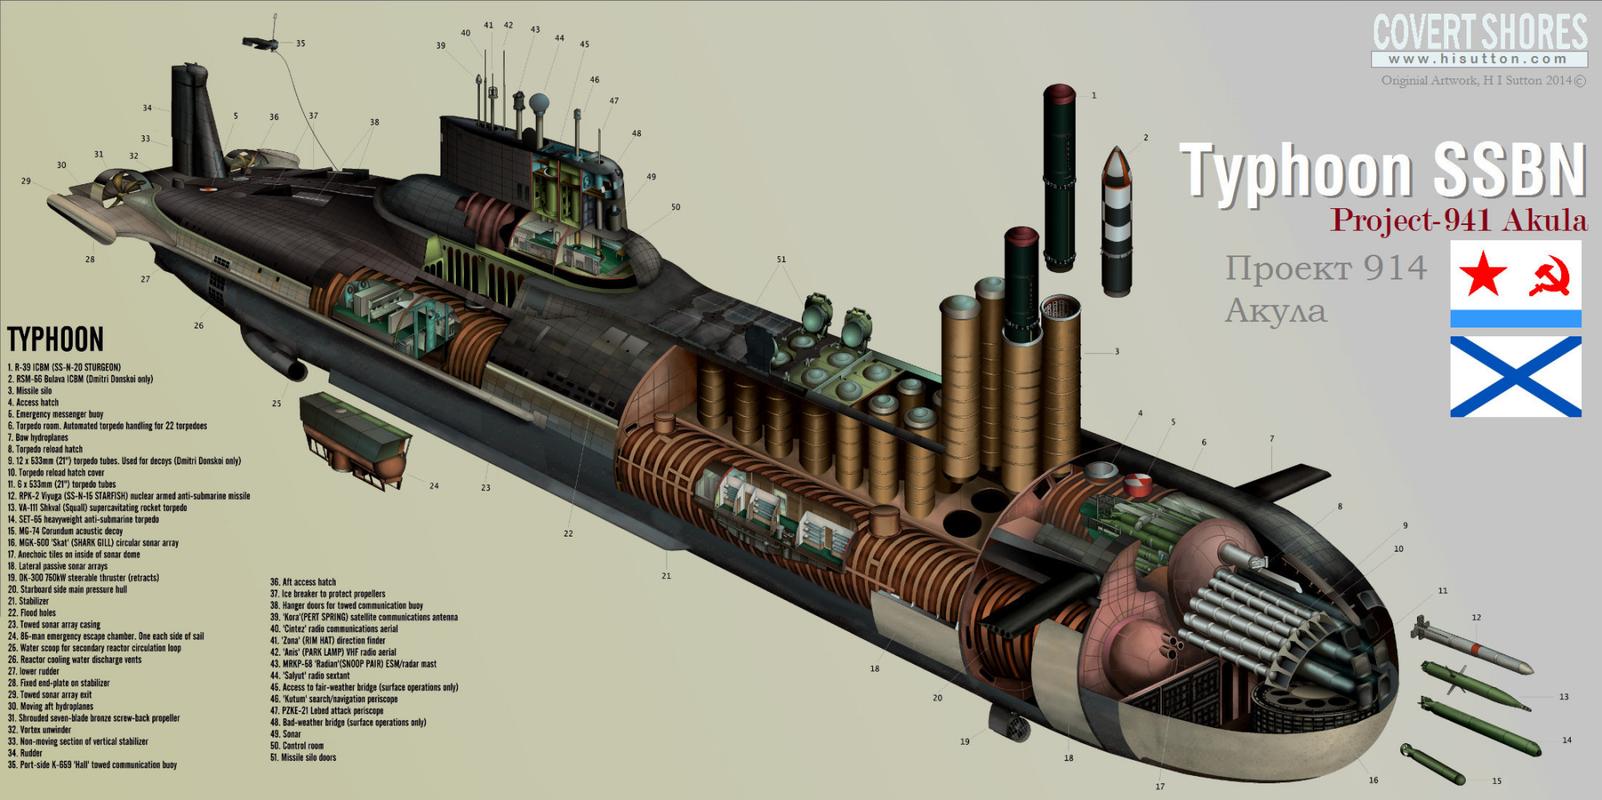 世界"常规潜艇"与"核潜艇"剖面结构图